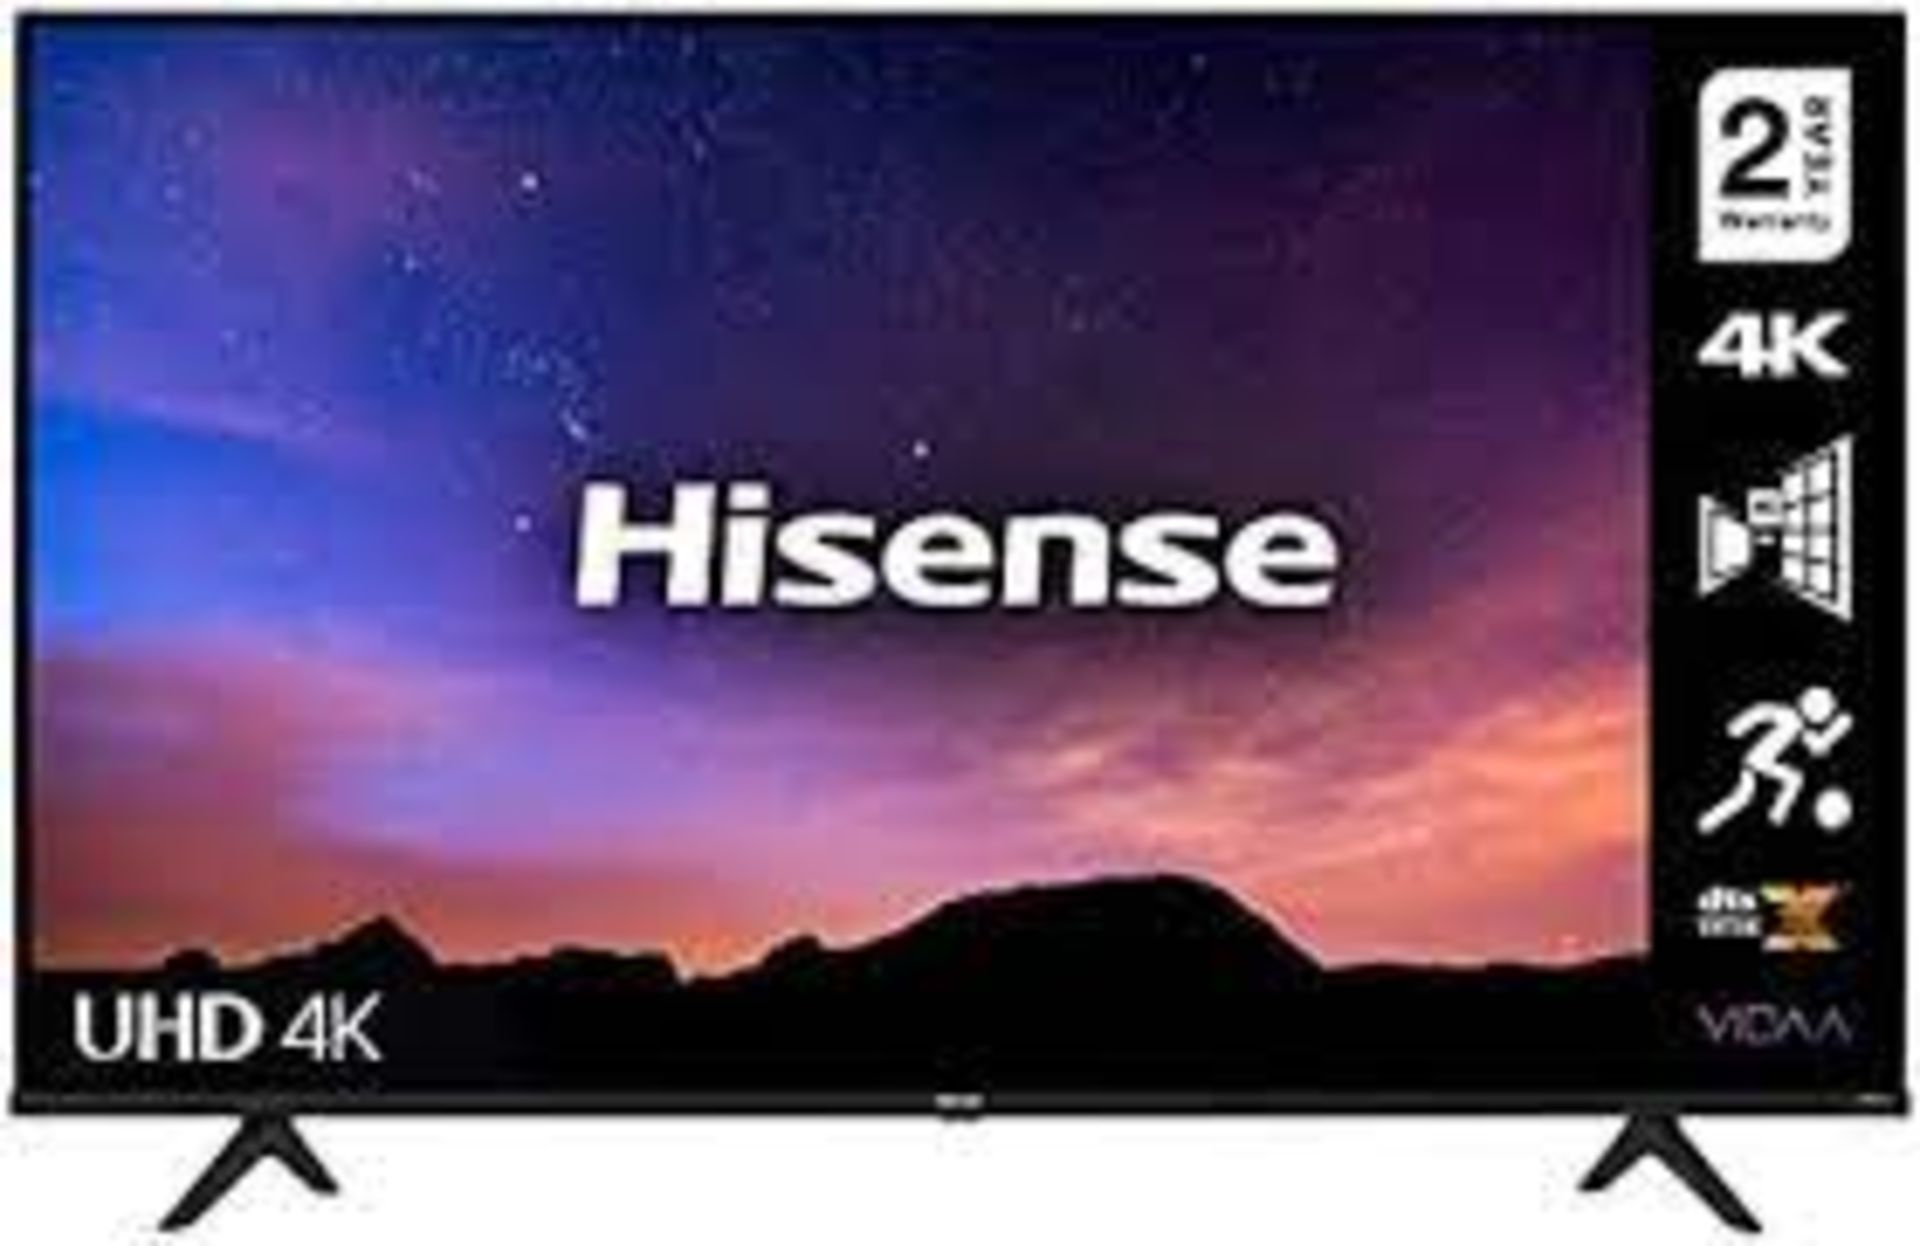 HISENSE SERIES 6 SMART HD TV 55 INCH RRP £549 PW